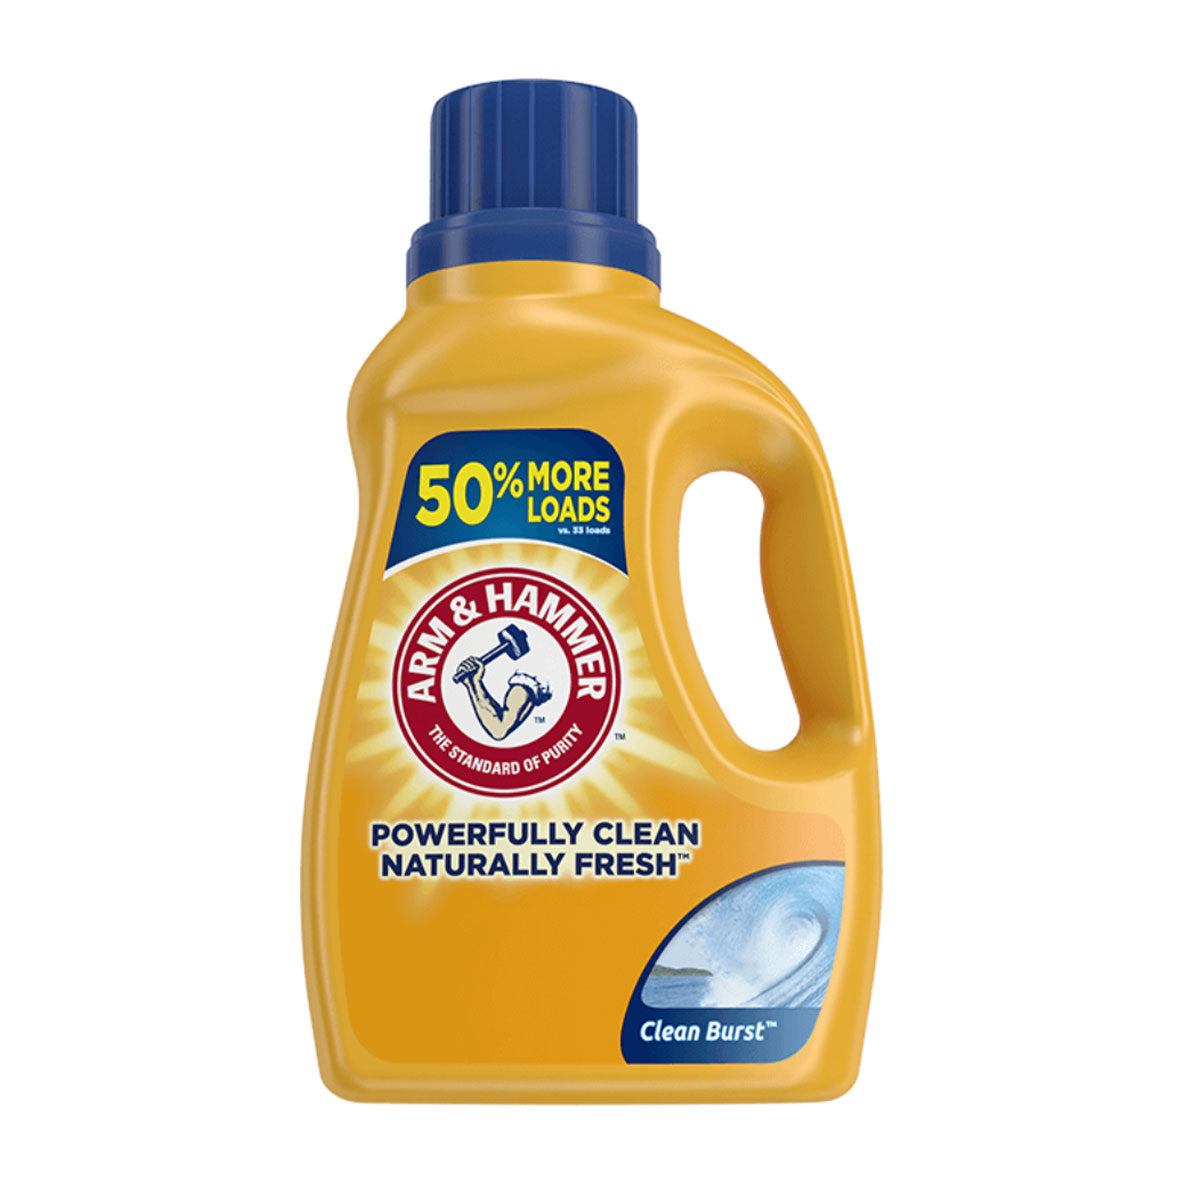 Detergente líquido concentrado para ropa Arm & Hammer Clean Burst, Alta Eficiencia 1,96 litros (50 cargas)